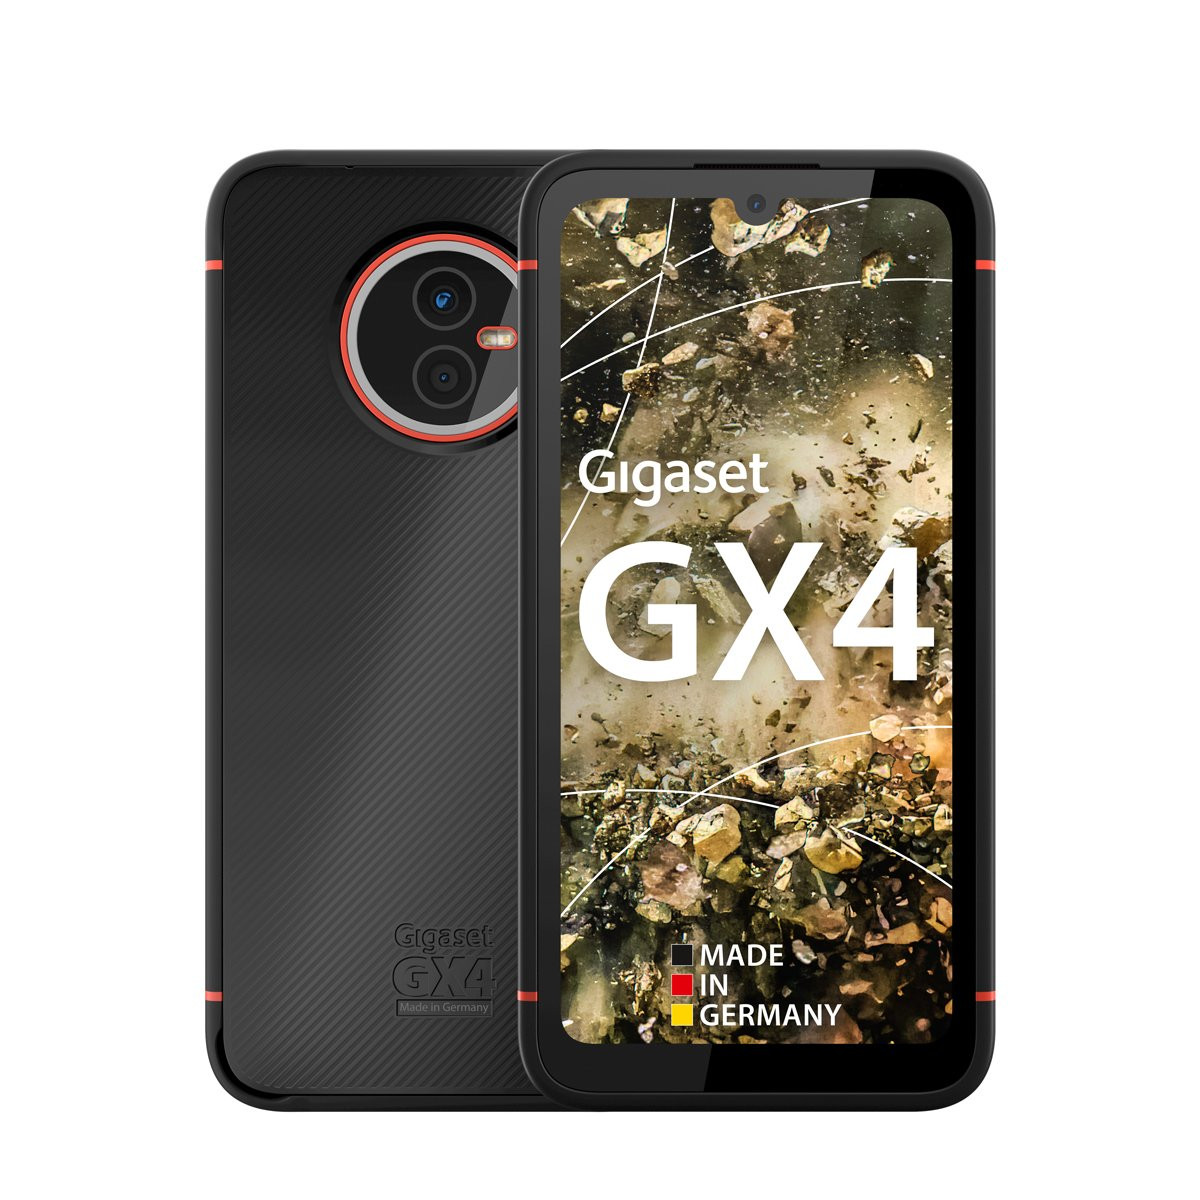 Gigaset GX4, el smartphone outdoor más salvaje de la firma alemana